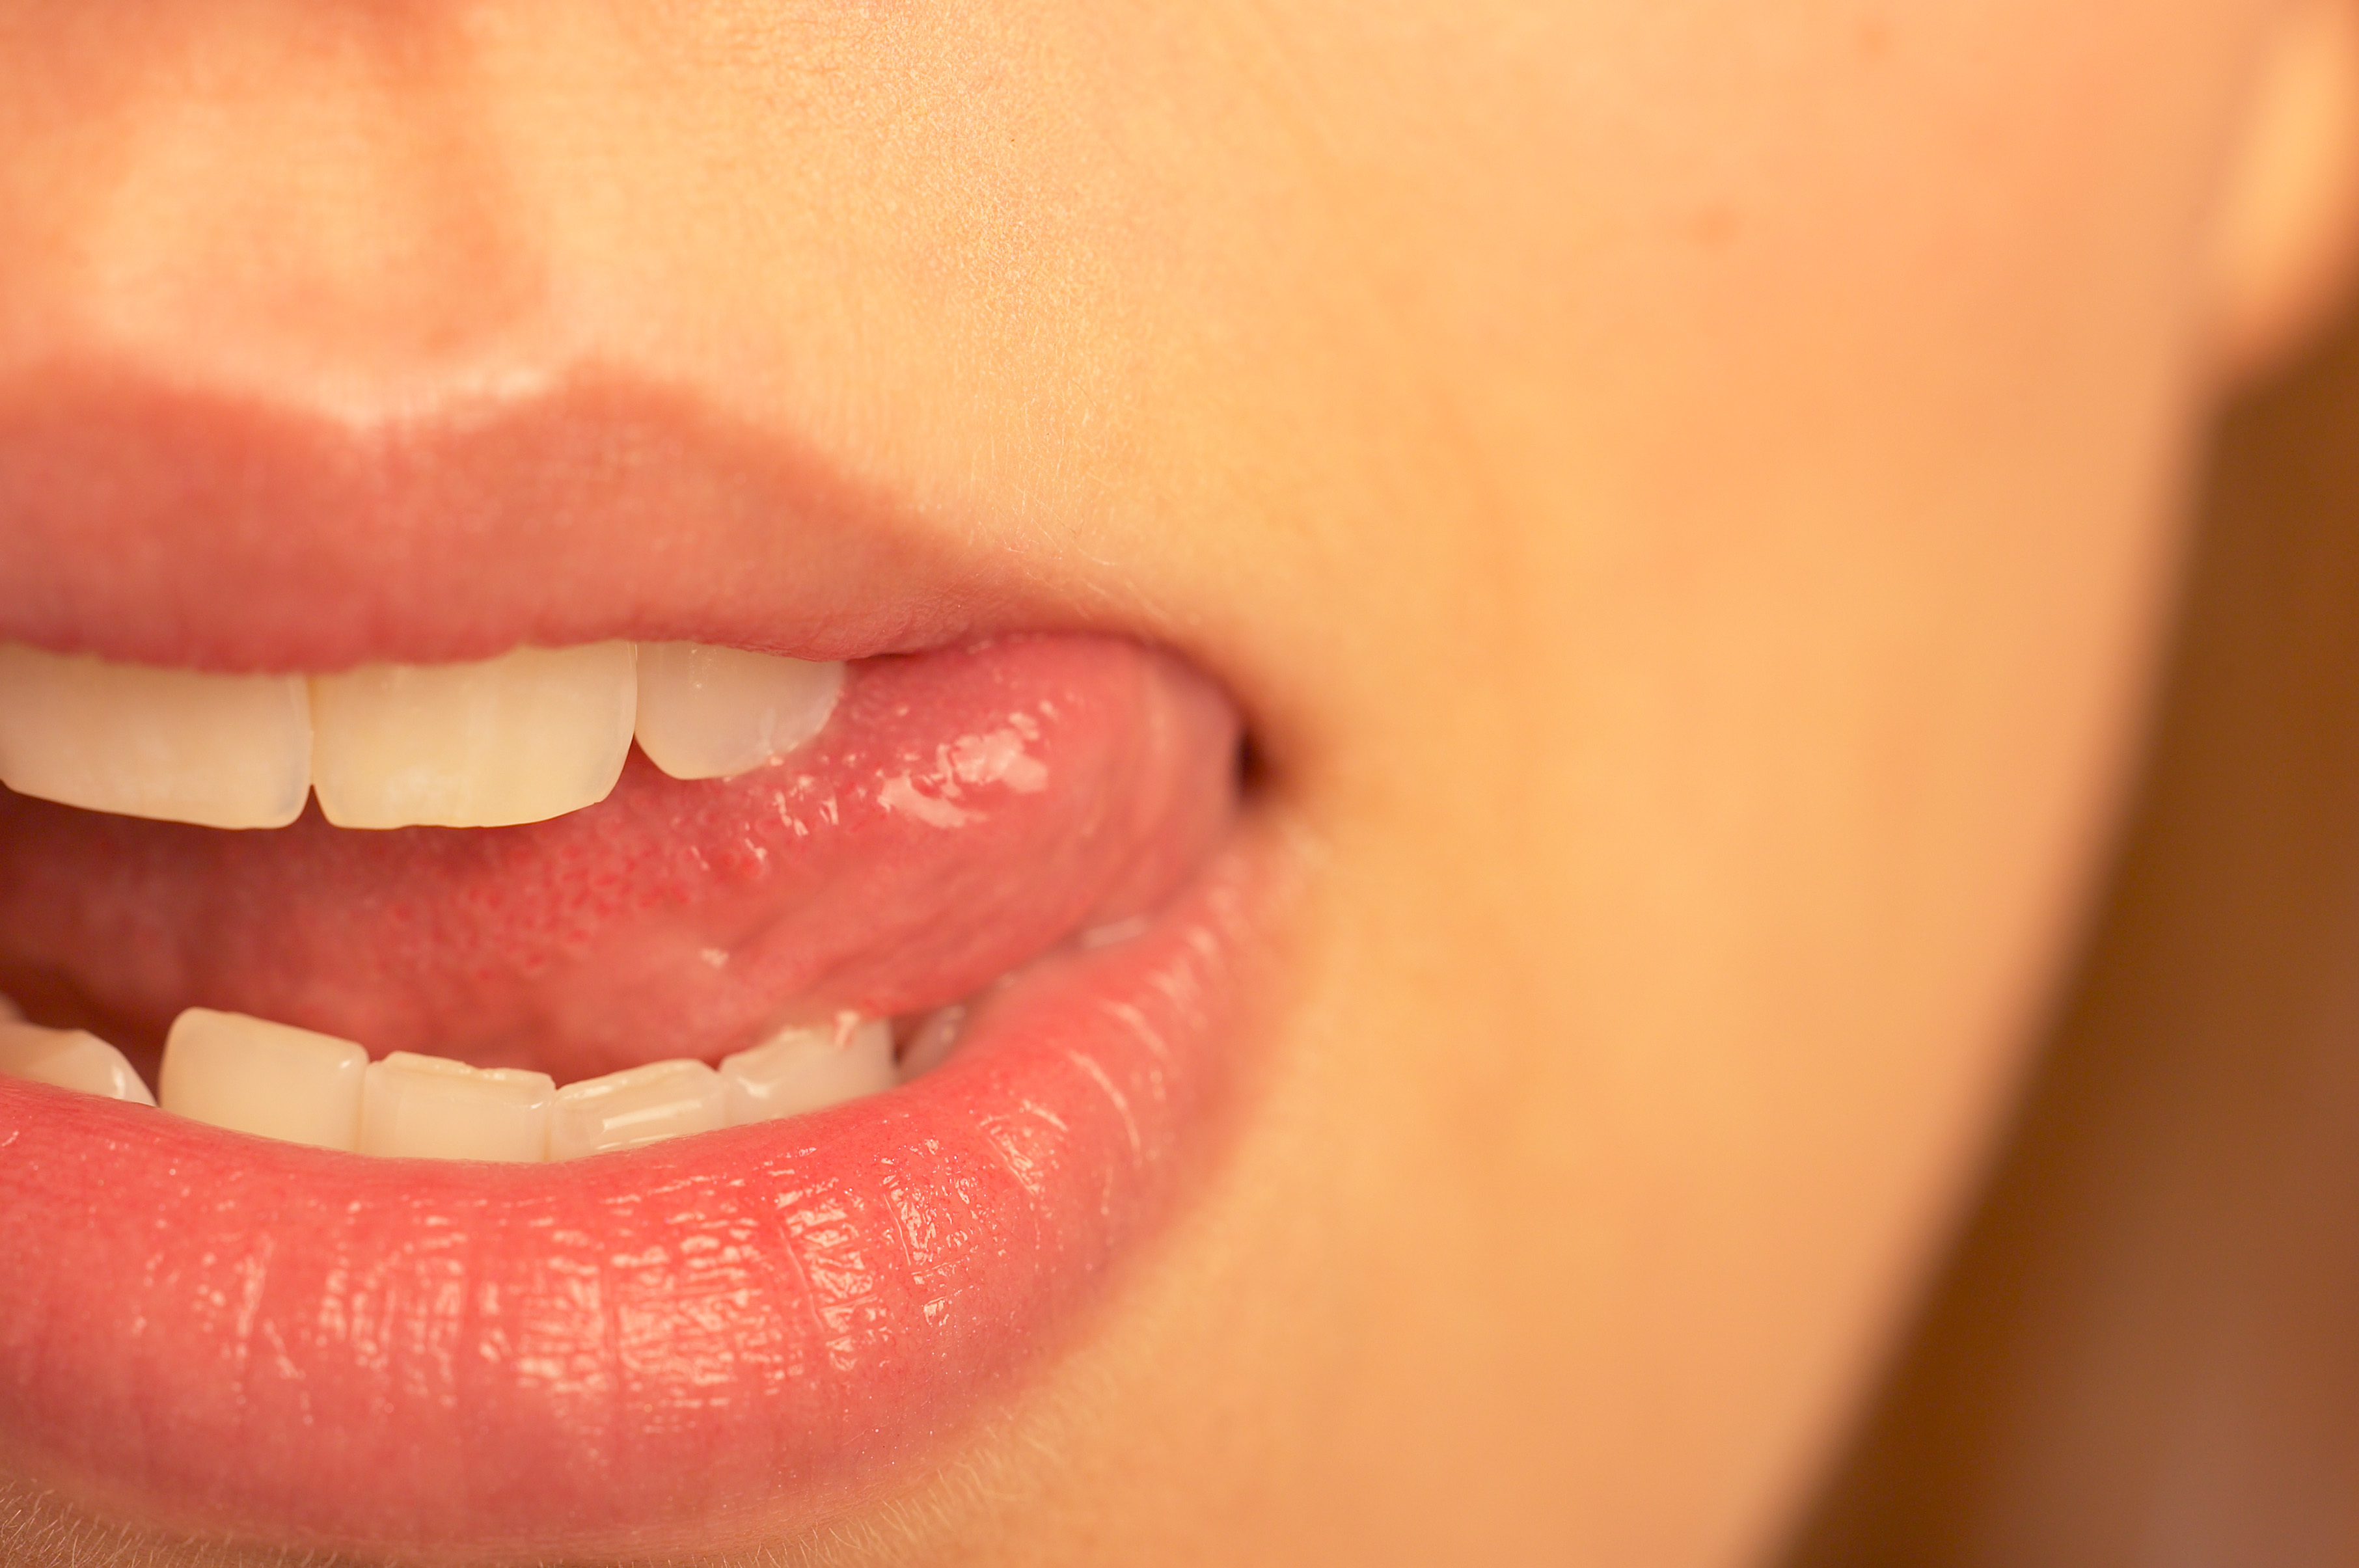 Κακοσμία στο στόμα: Που οφείλεται, πως αντιμετωπίζεται;